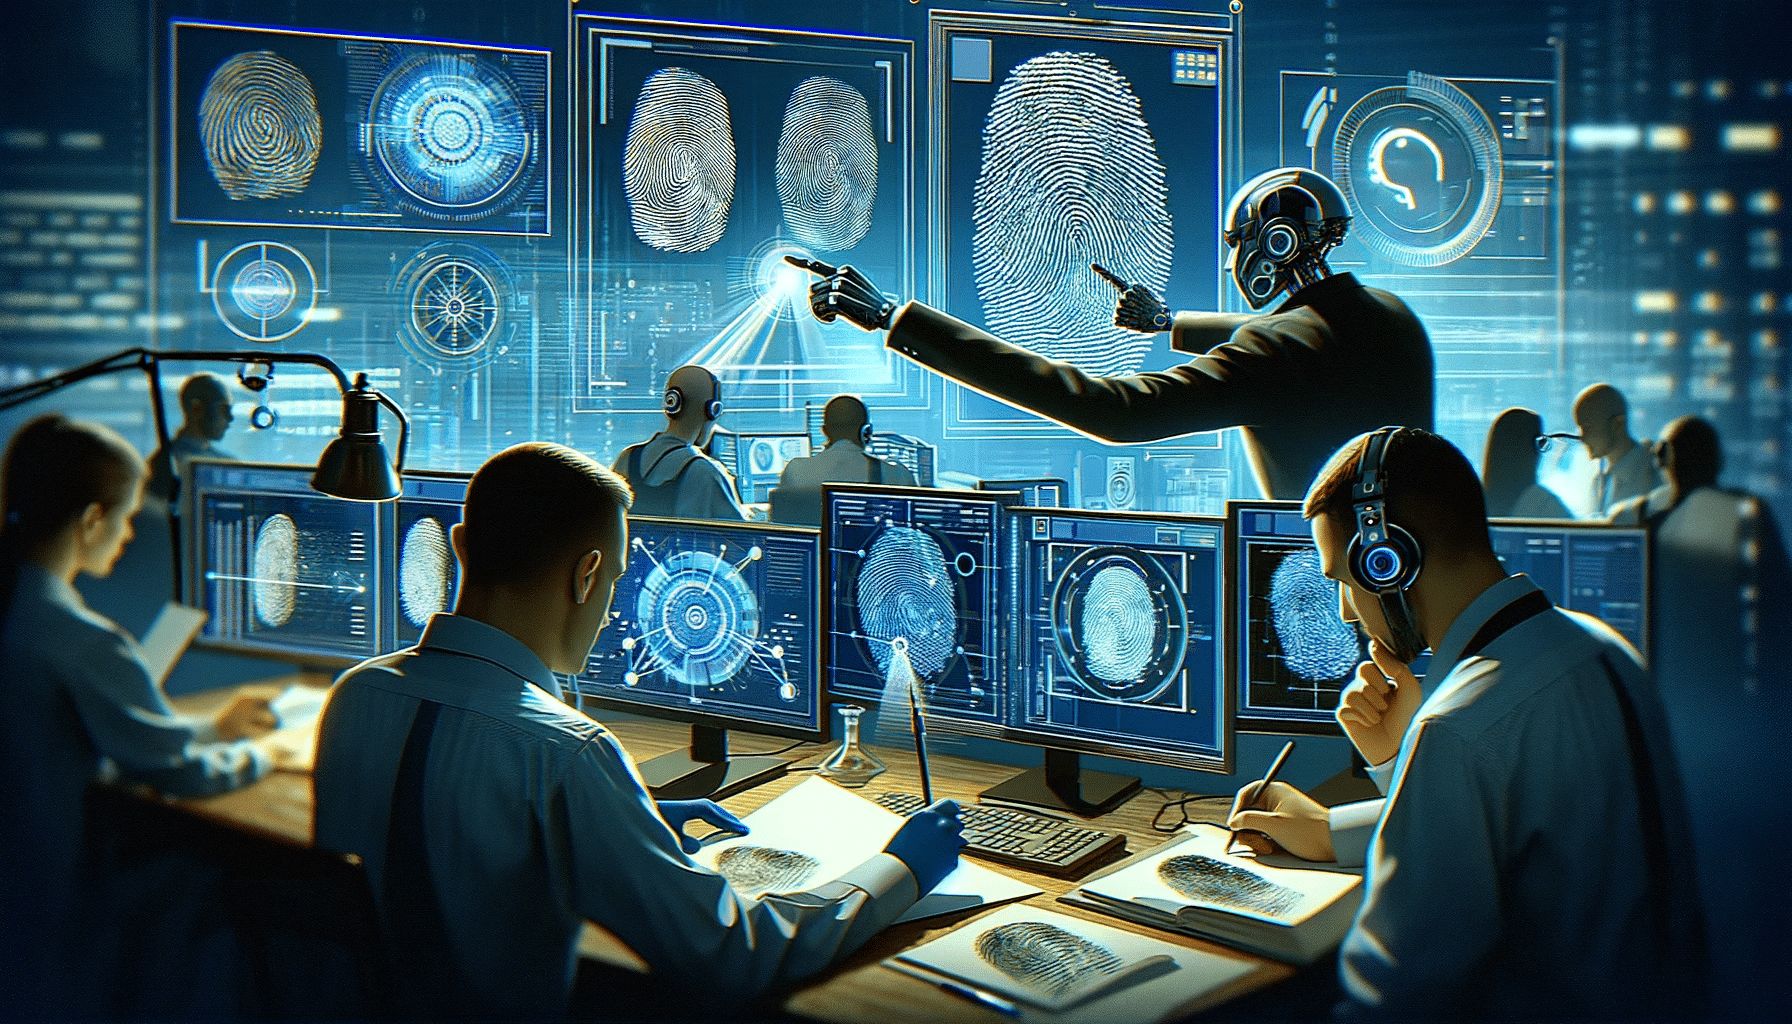 Illustration d'un système d'IA analysant des empreintes digitales, avec des interfaces affichant des algorithmes complexes et des analyses liant les empreintes à des bases de données de sécurité ou des dossiers criminels.